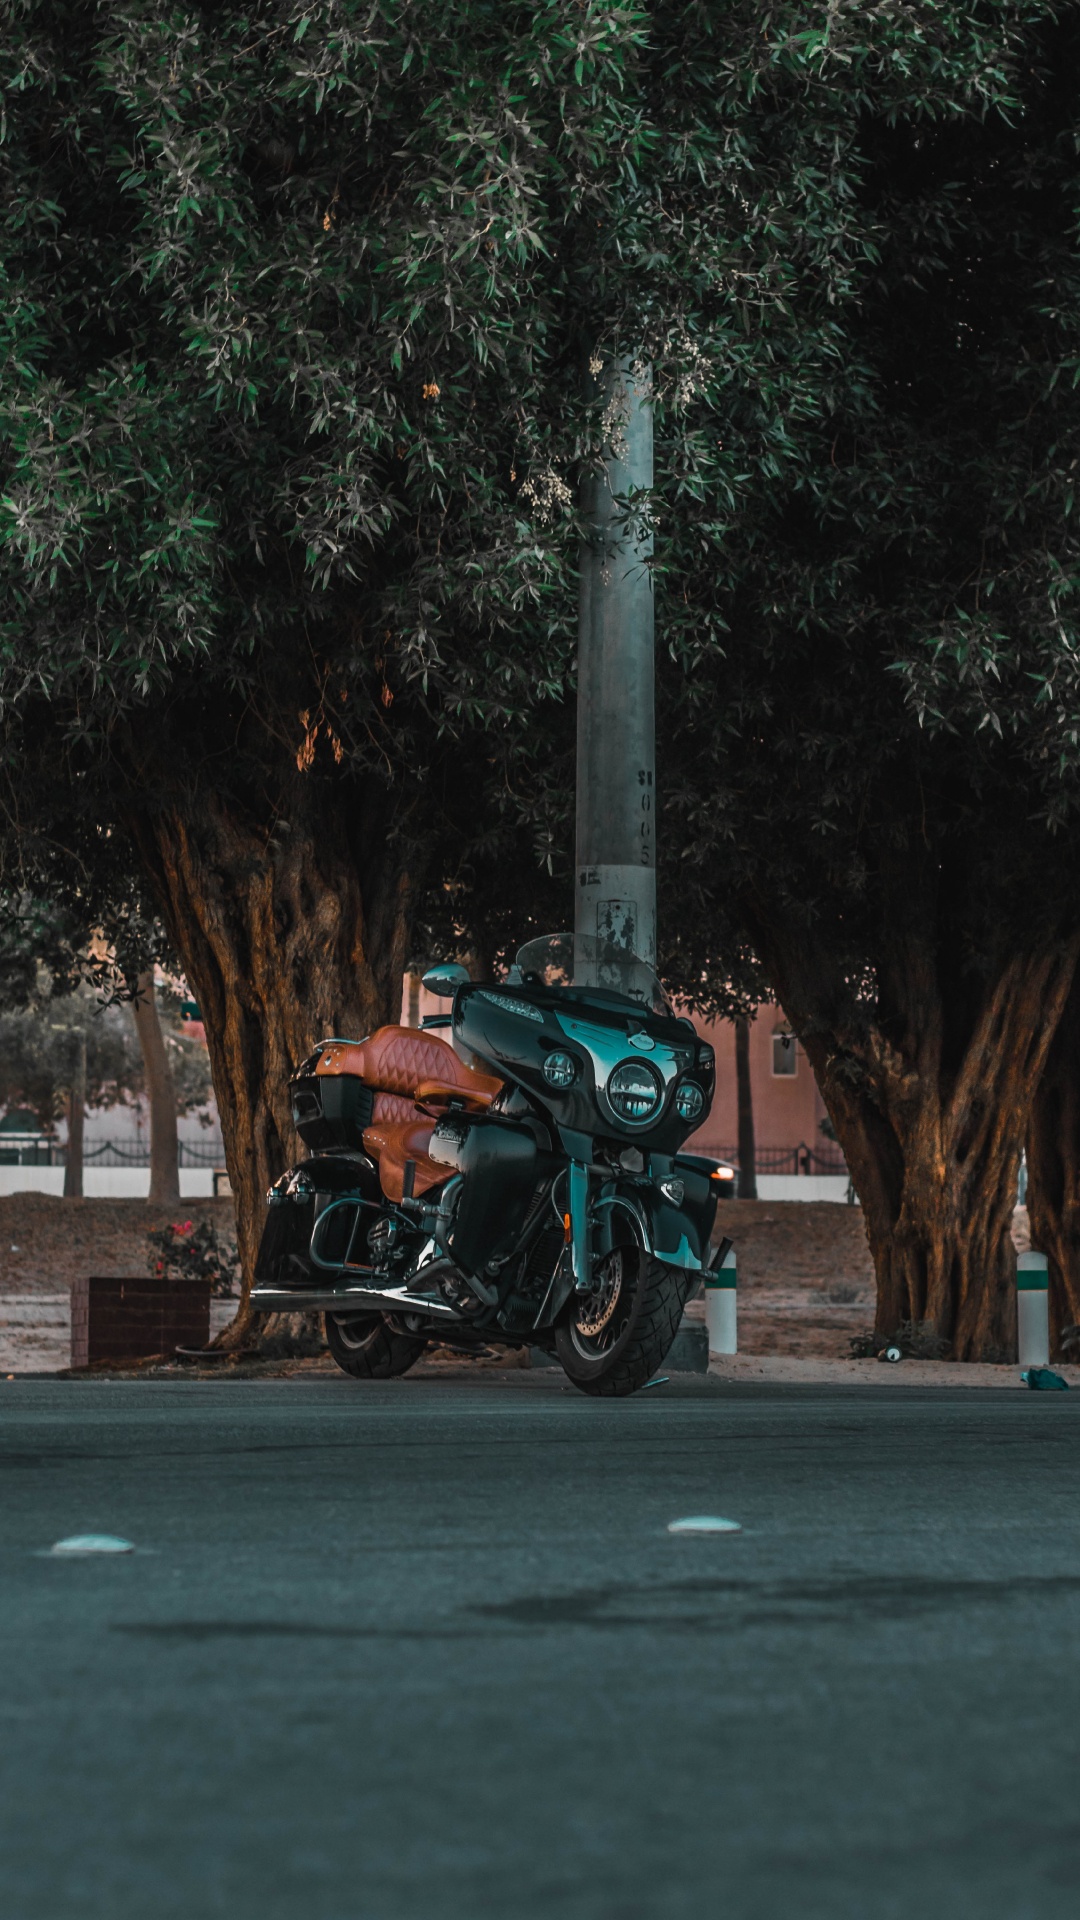 Motocicleta Verde y Negra Estacionada en la Carretera de Hormigón Gris Durante el Día. Wallpaper in 1080x1920 Resolution